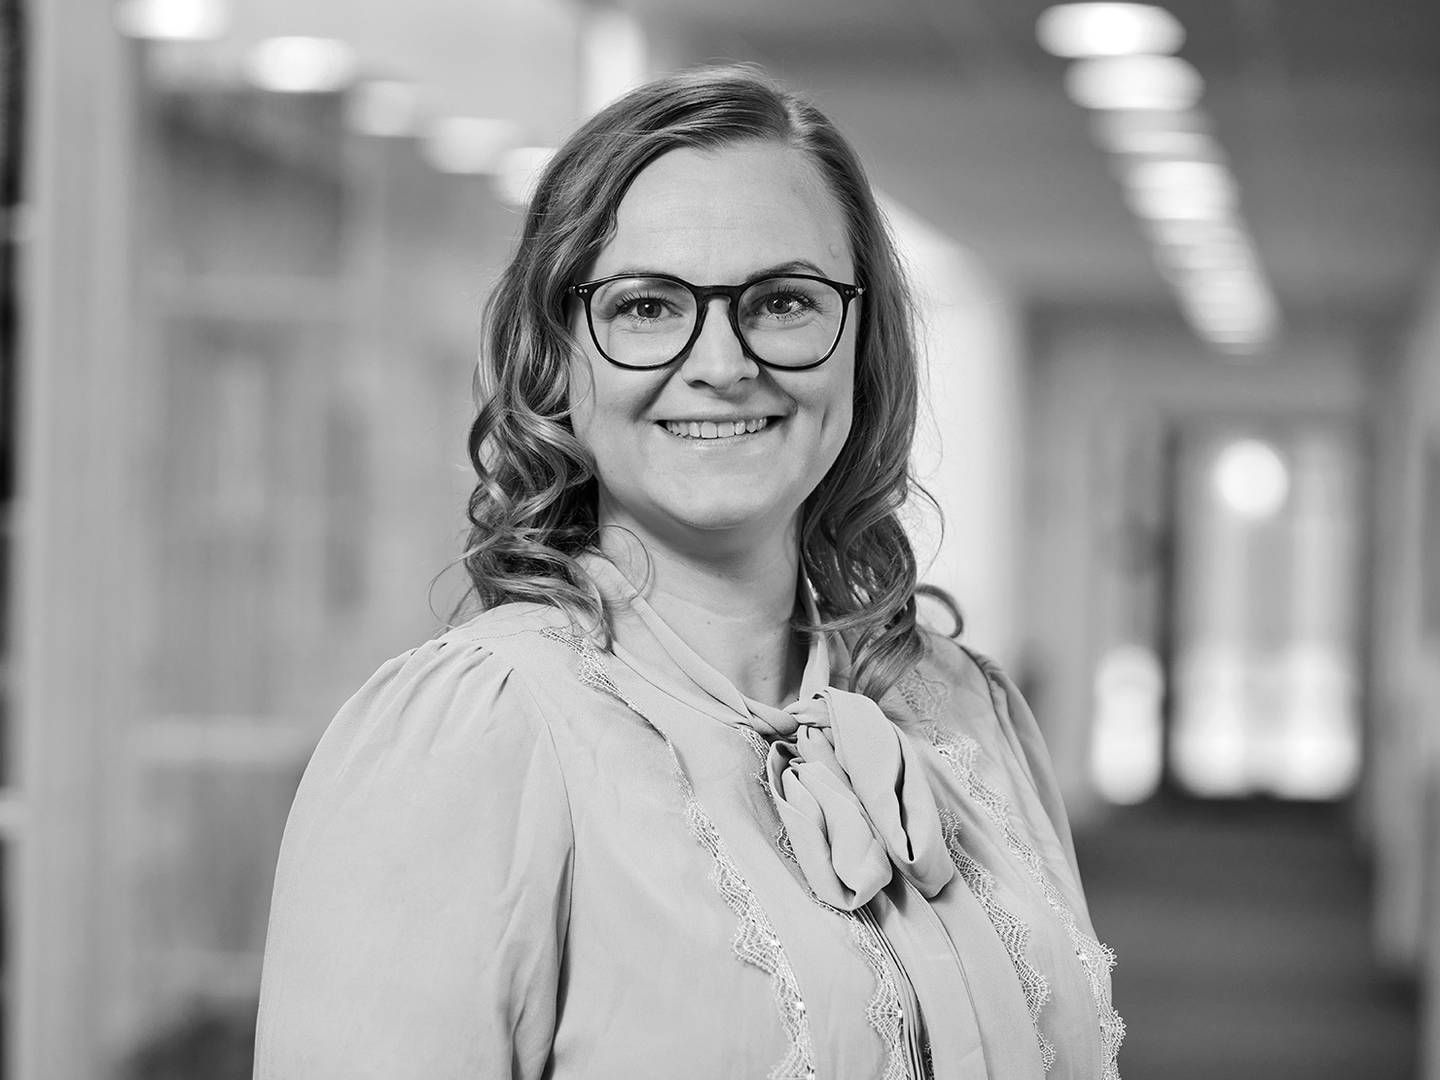 Mathilde Bak skiftede til Hjulmandkaptain i juni. Hun arbejder på advokatfirmaets kontor i Frederikshavn, hvor hun rådgiver kunder inden for arbejds- og ansættelsesret. | Foto: nils krogh